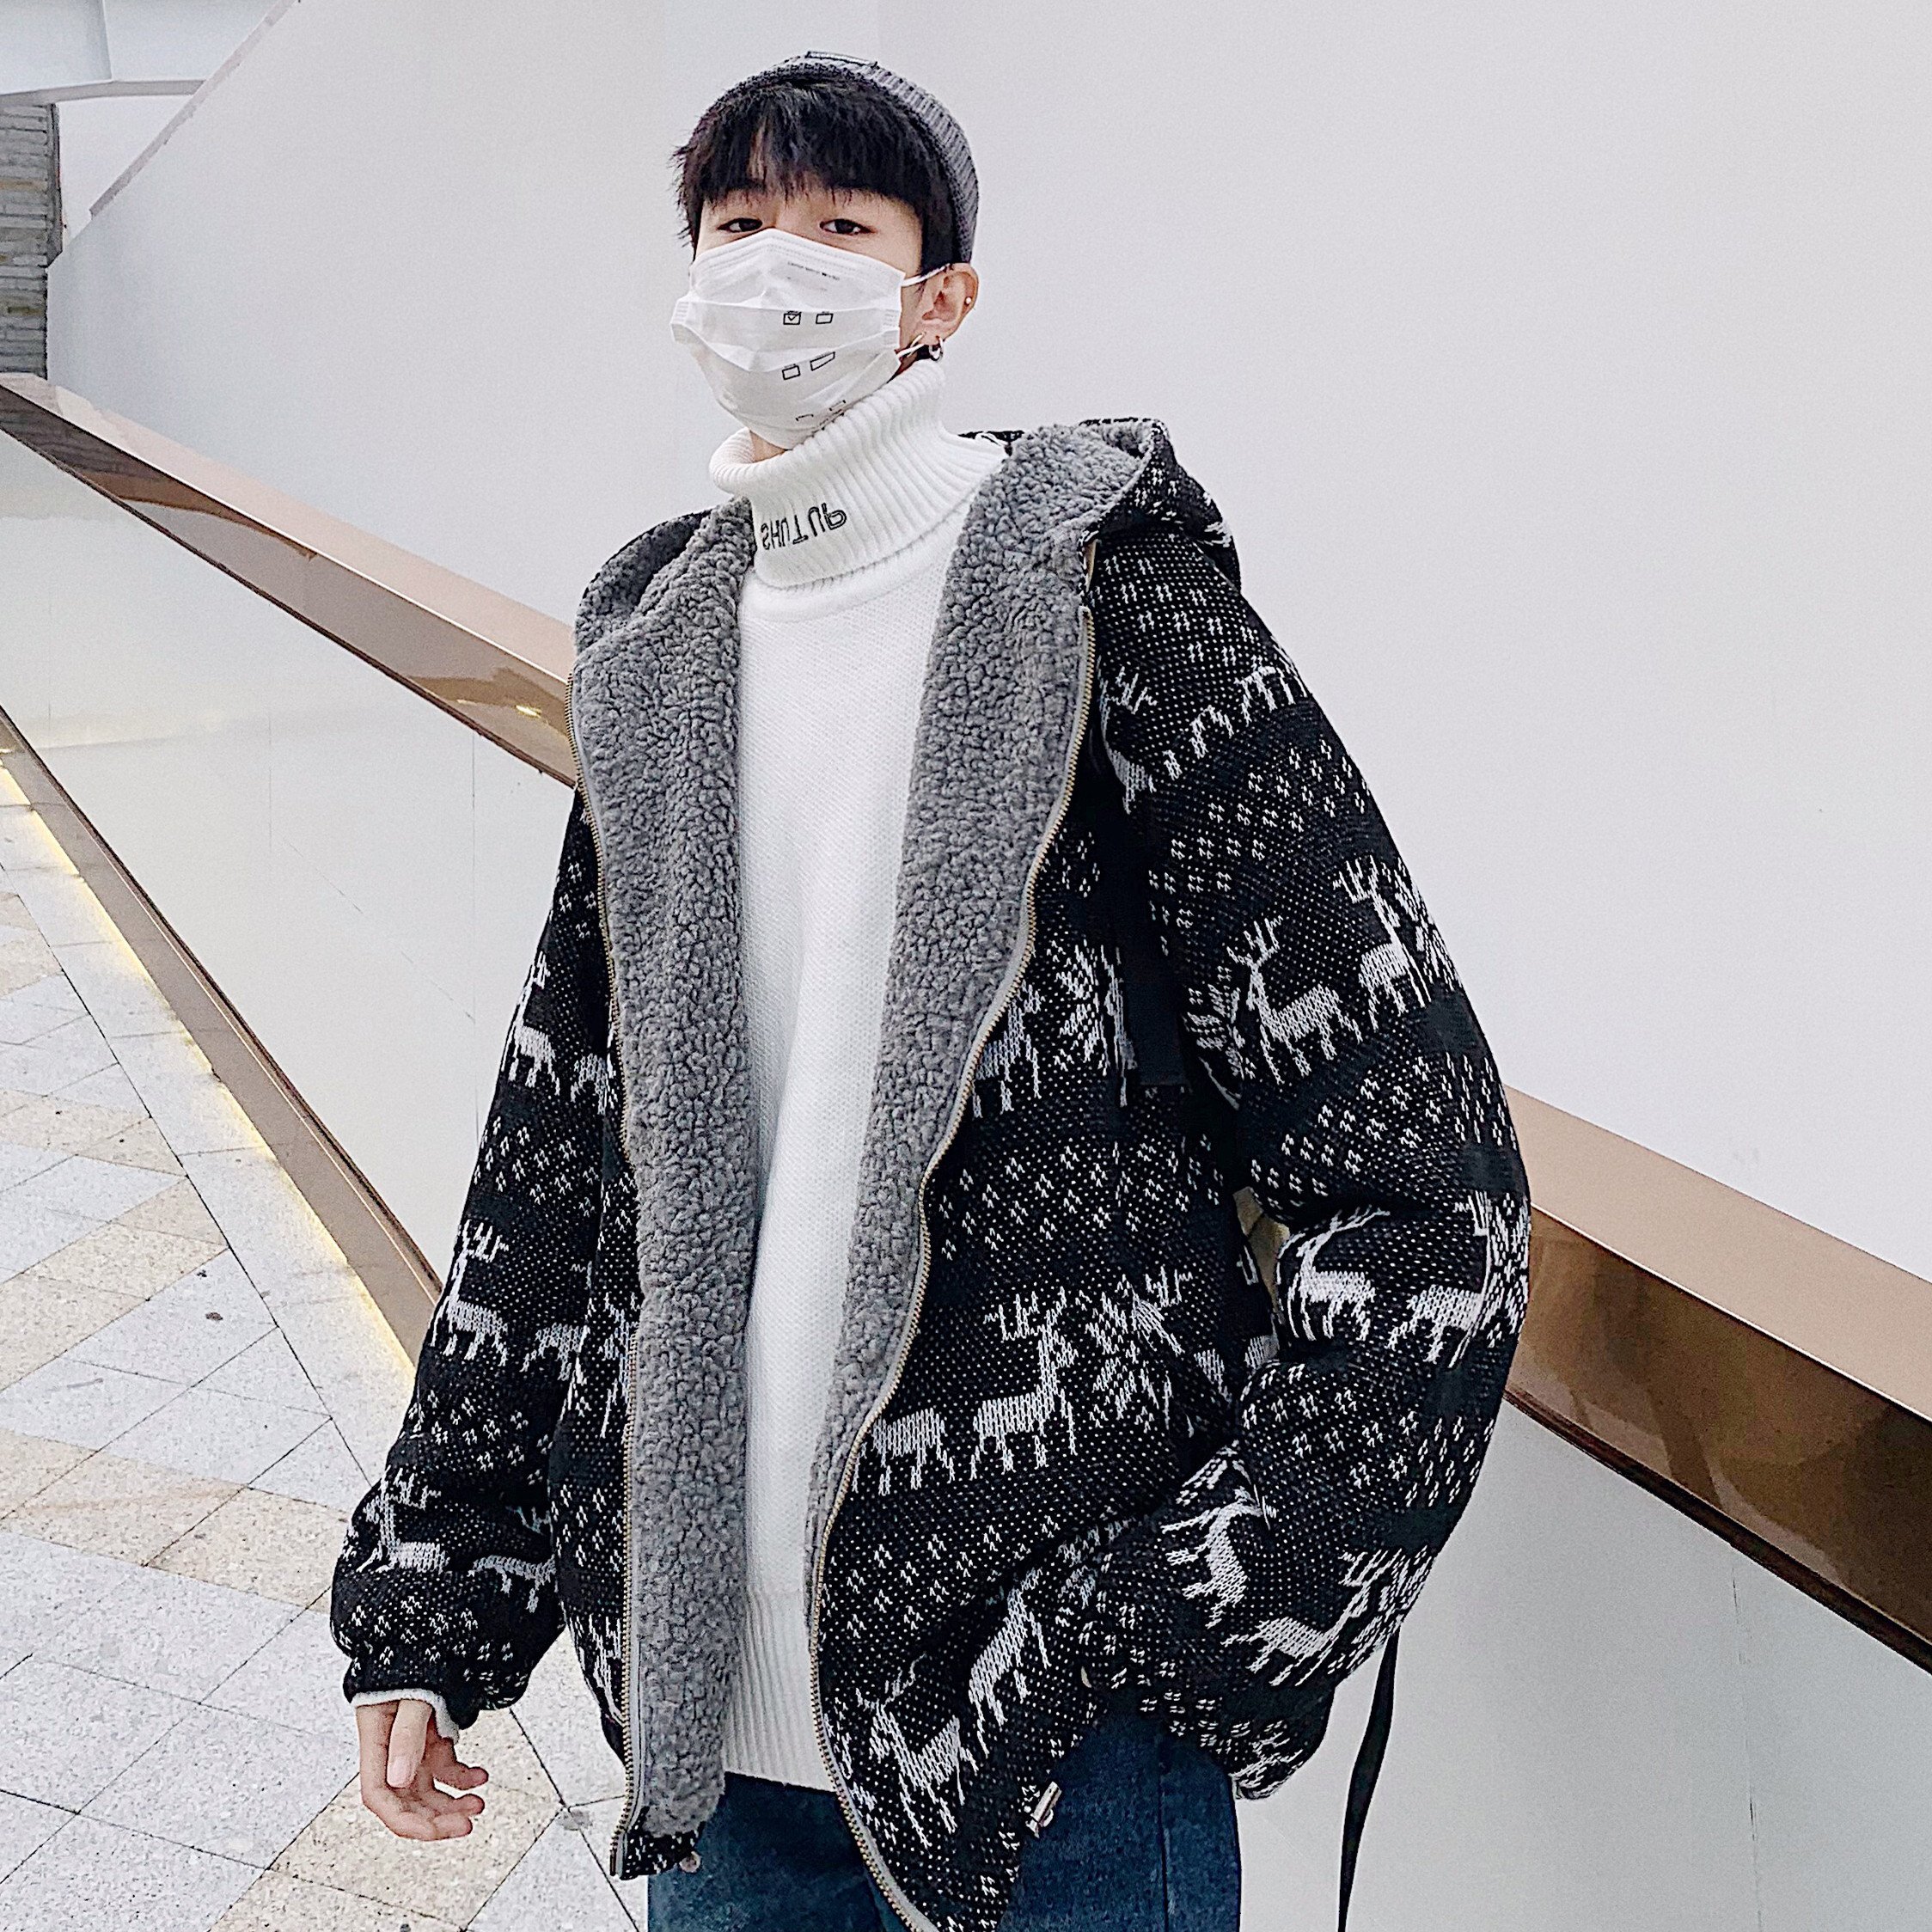 FINDSENSE品牌 秋冬季 新款 韓國 嘻哈純色 個性 長袖 運動 小鹿 寬鬆顯瘦 棉衣外套 時尚 潮流上衣